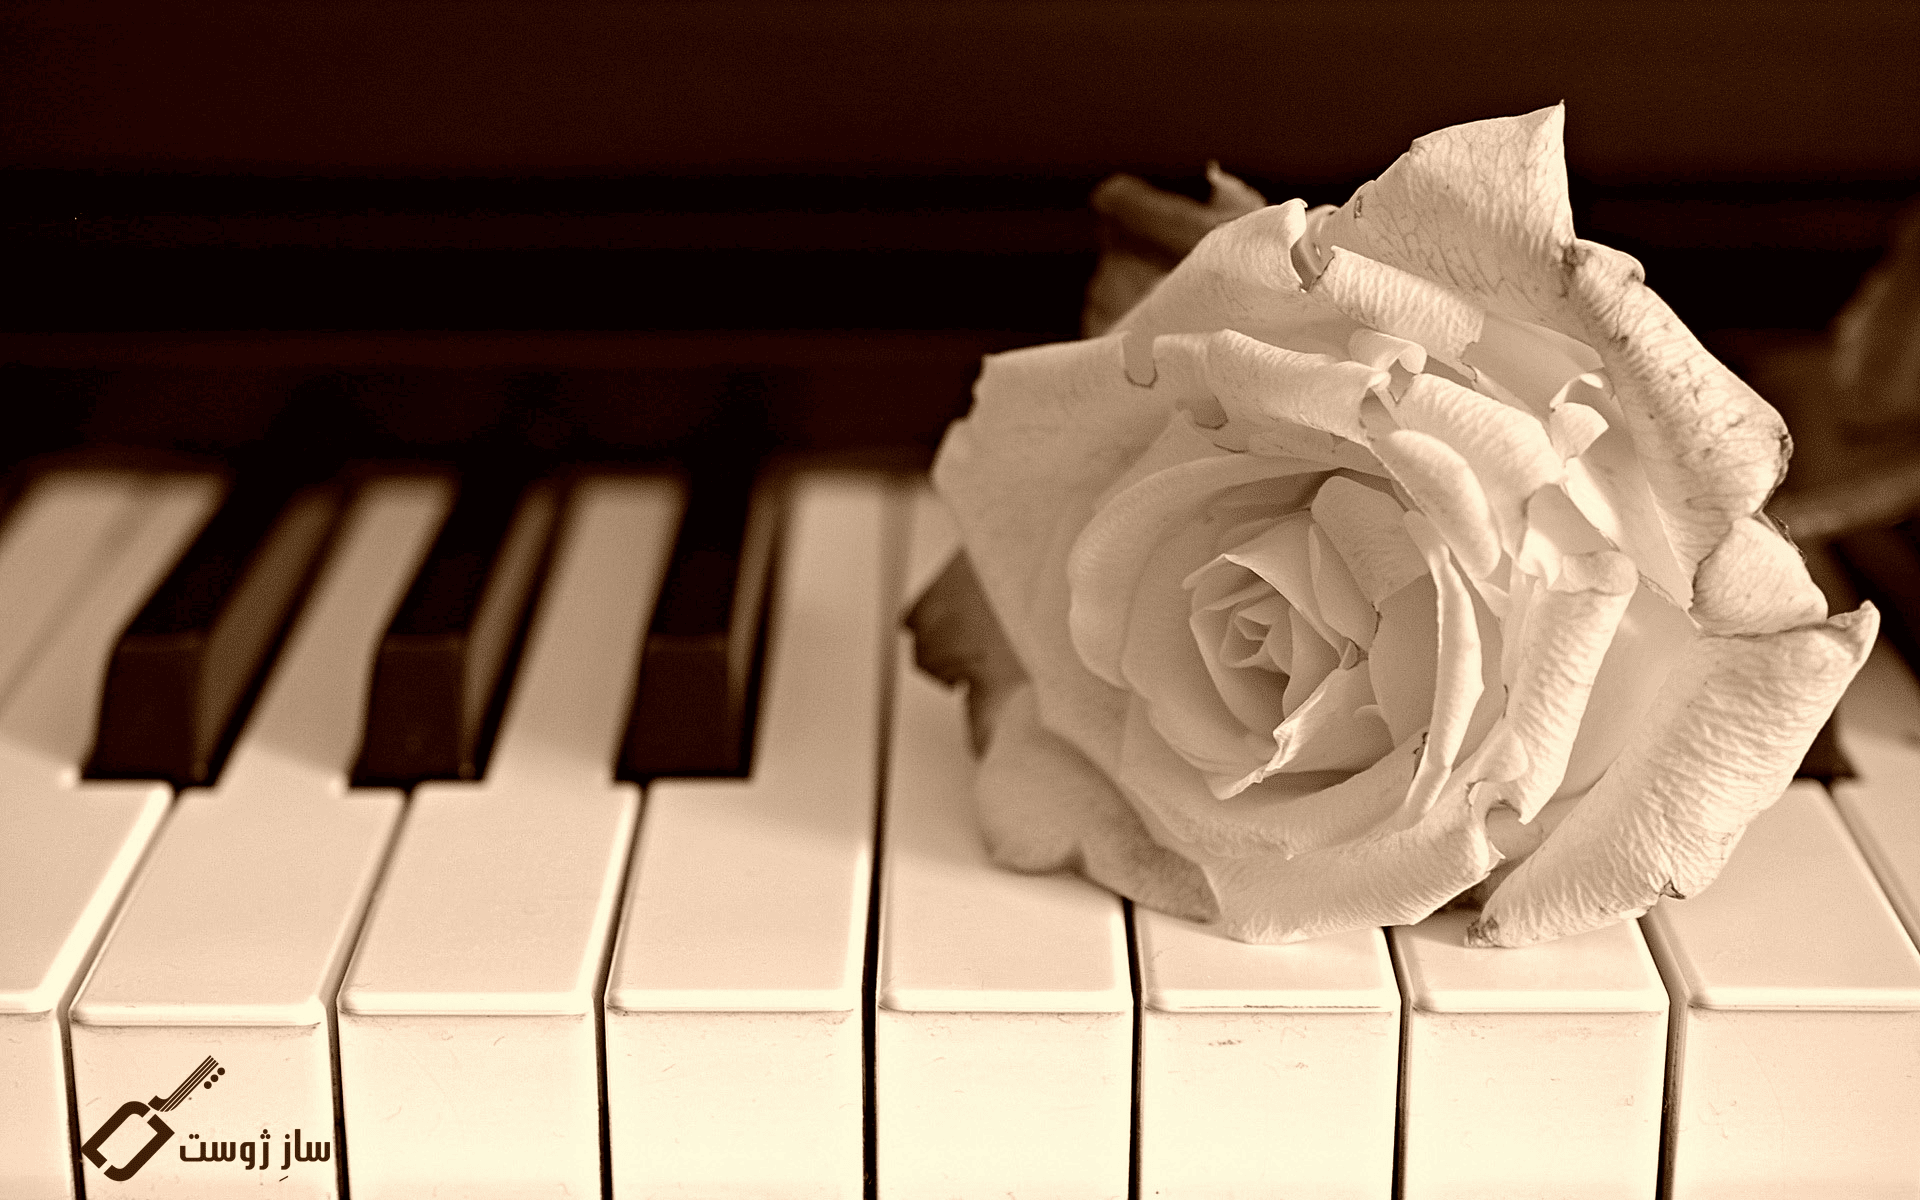 انواع پیانو